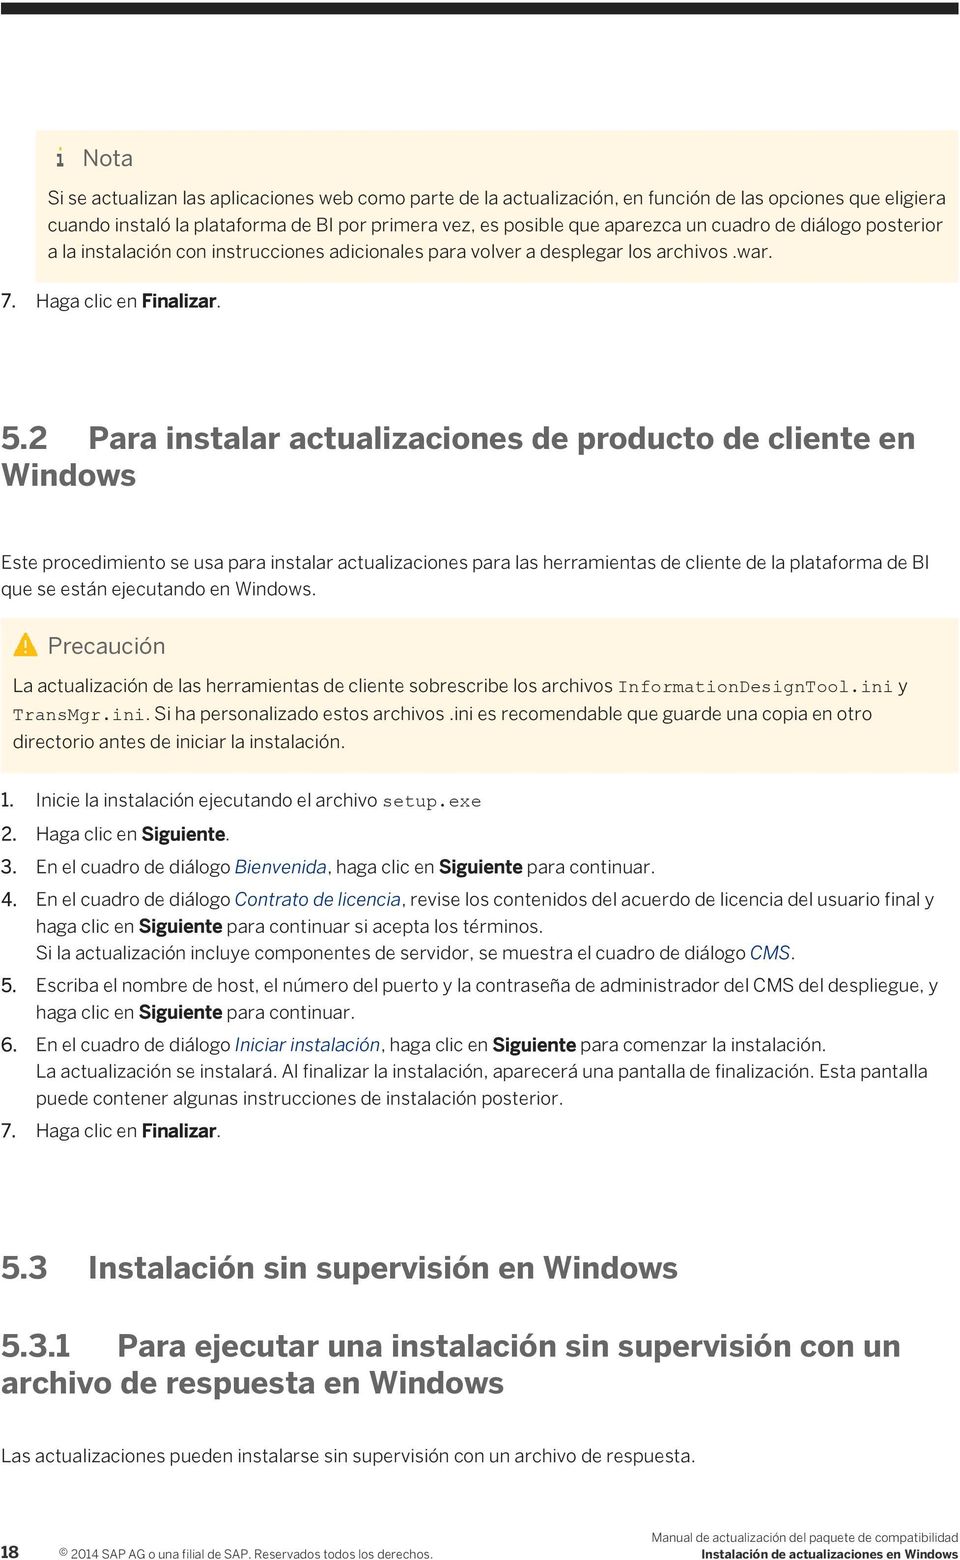 2 Para instalar actualizaciones de producto de cliente en Windows Este procedimiento se usa para instalar actualizaciones para las herramientas de cliente de la plataforma de BI que se están